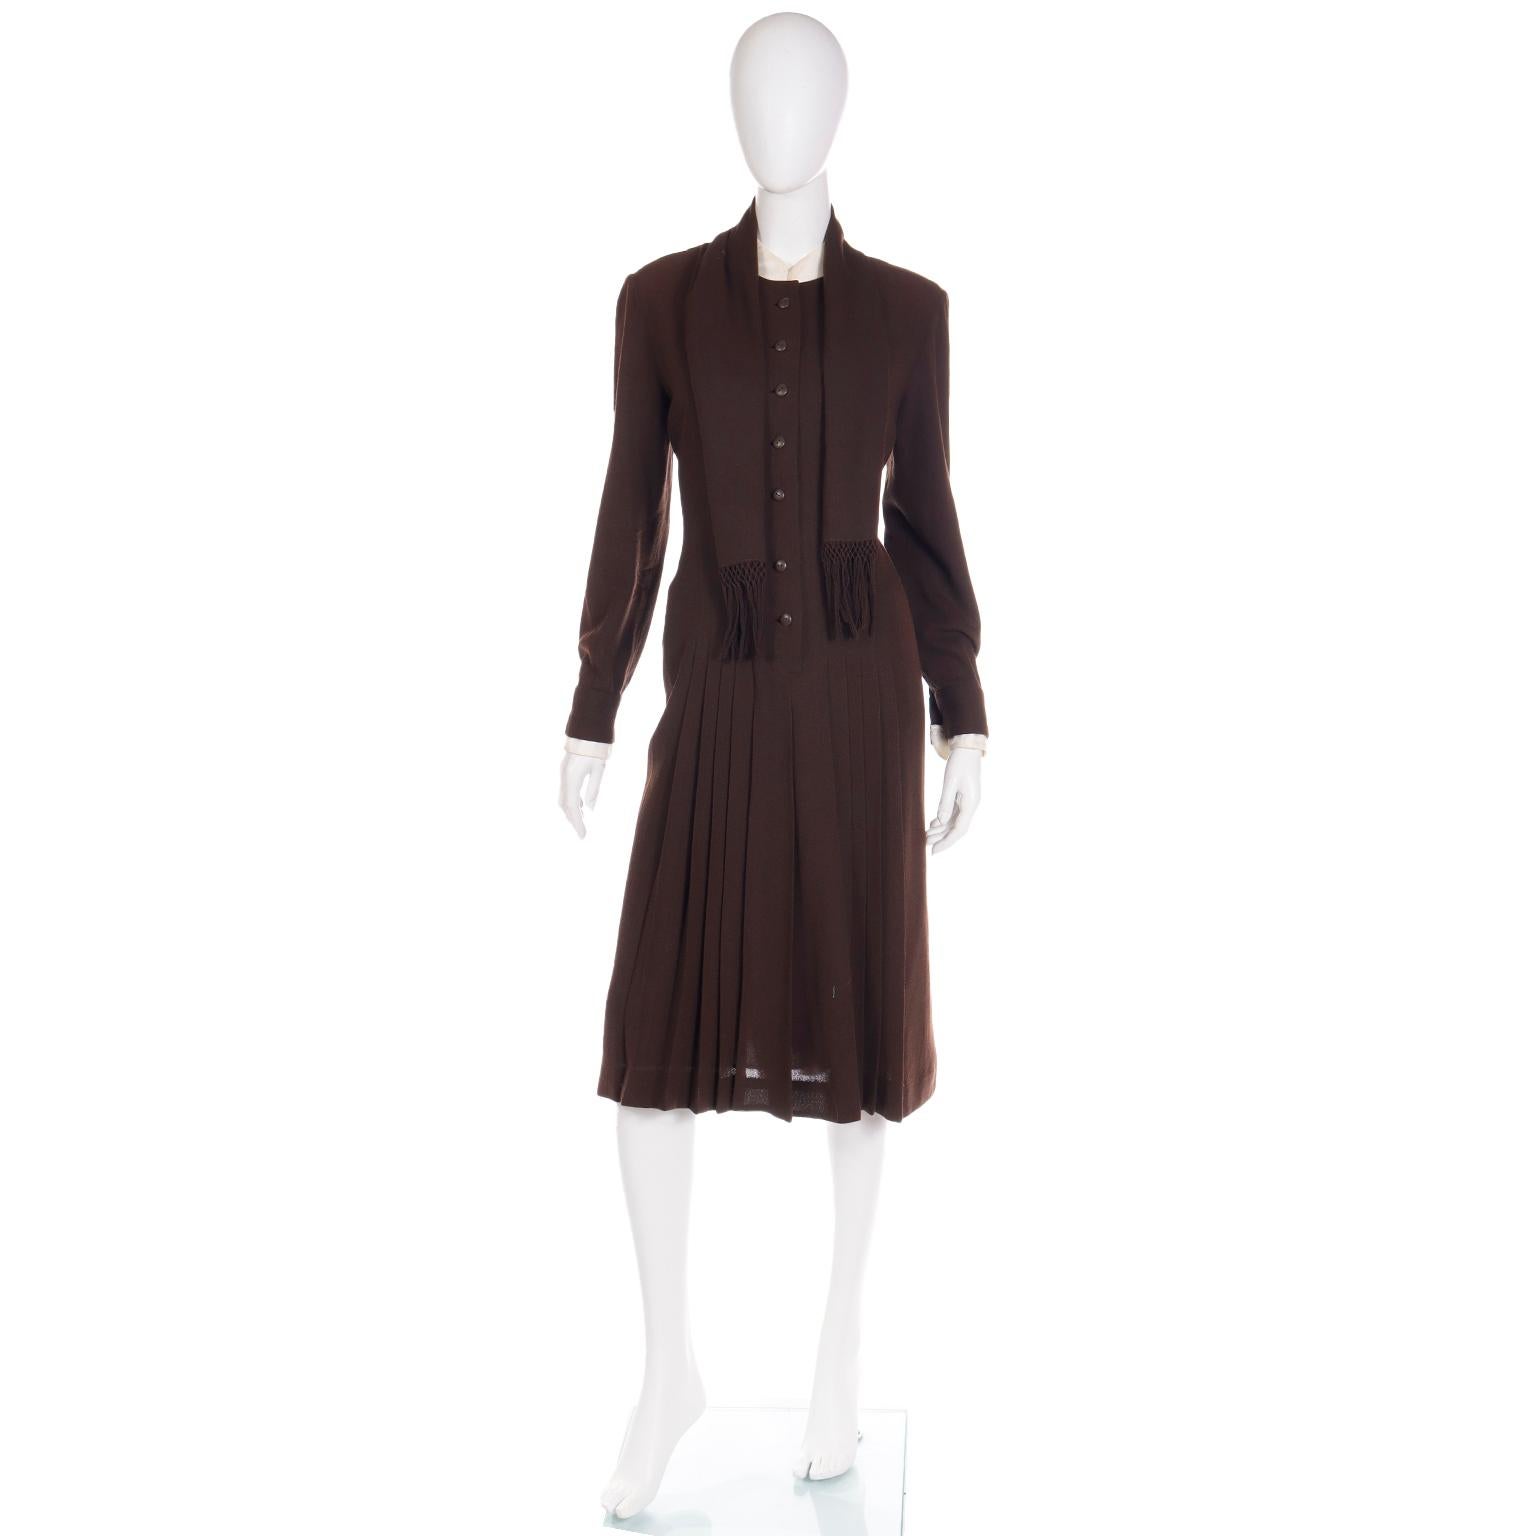 Dieses sehr schicke, raffinierte Vintage-Kleid wurde Ende der 1970er Jahre von Jean Louis für I. Magnin hergestellt. Wir haben dieses Kleid aus einem prominenten Nachlass erworben, der nur außergewöhnliche High-End-Designer-Vintage-Kleidung aus den